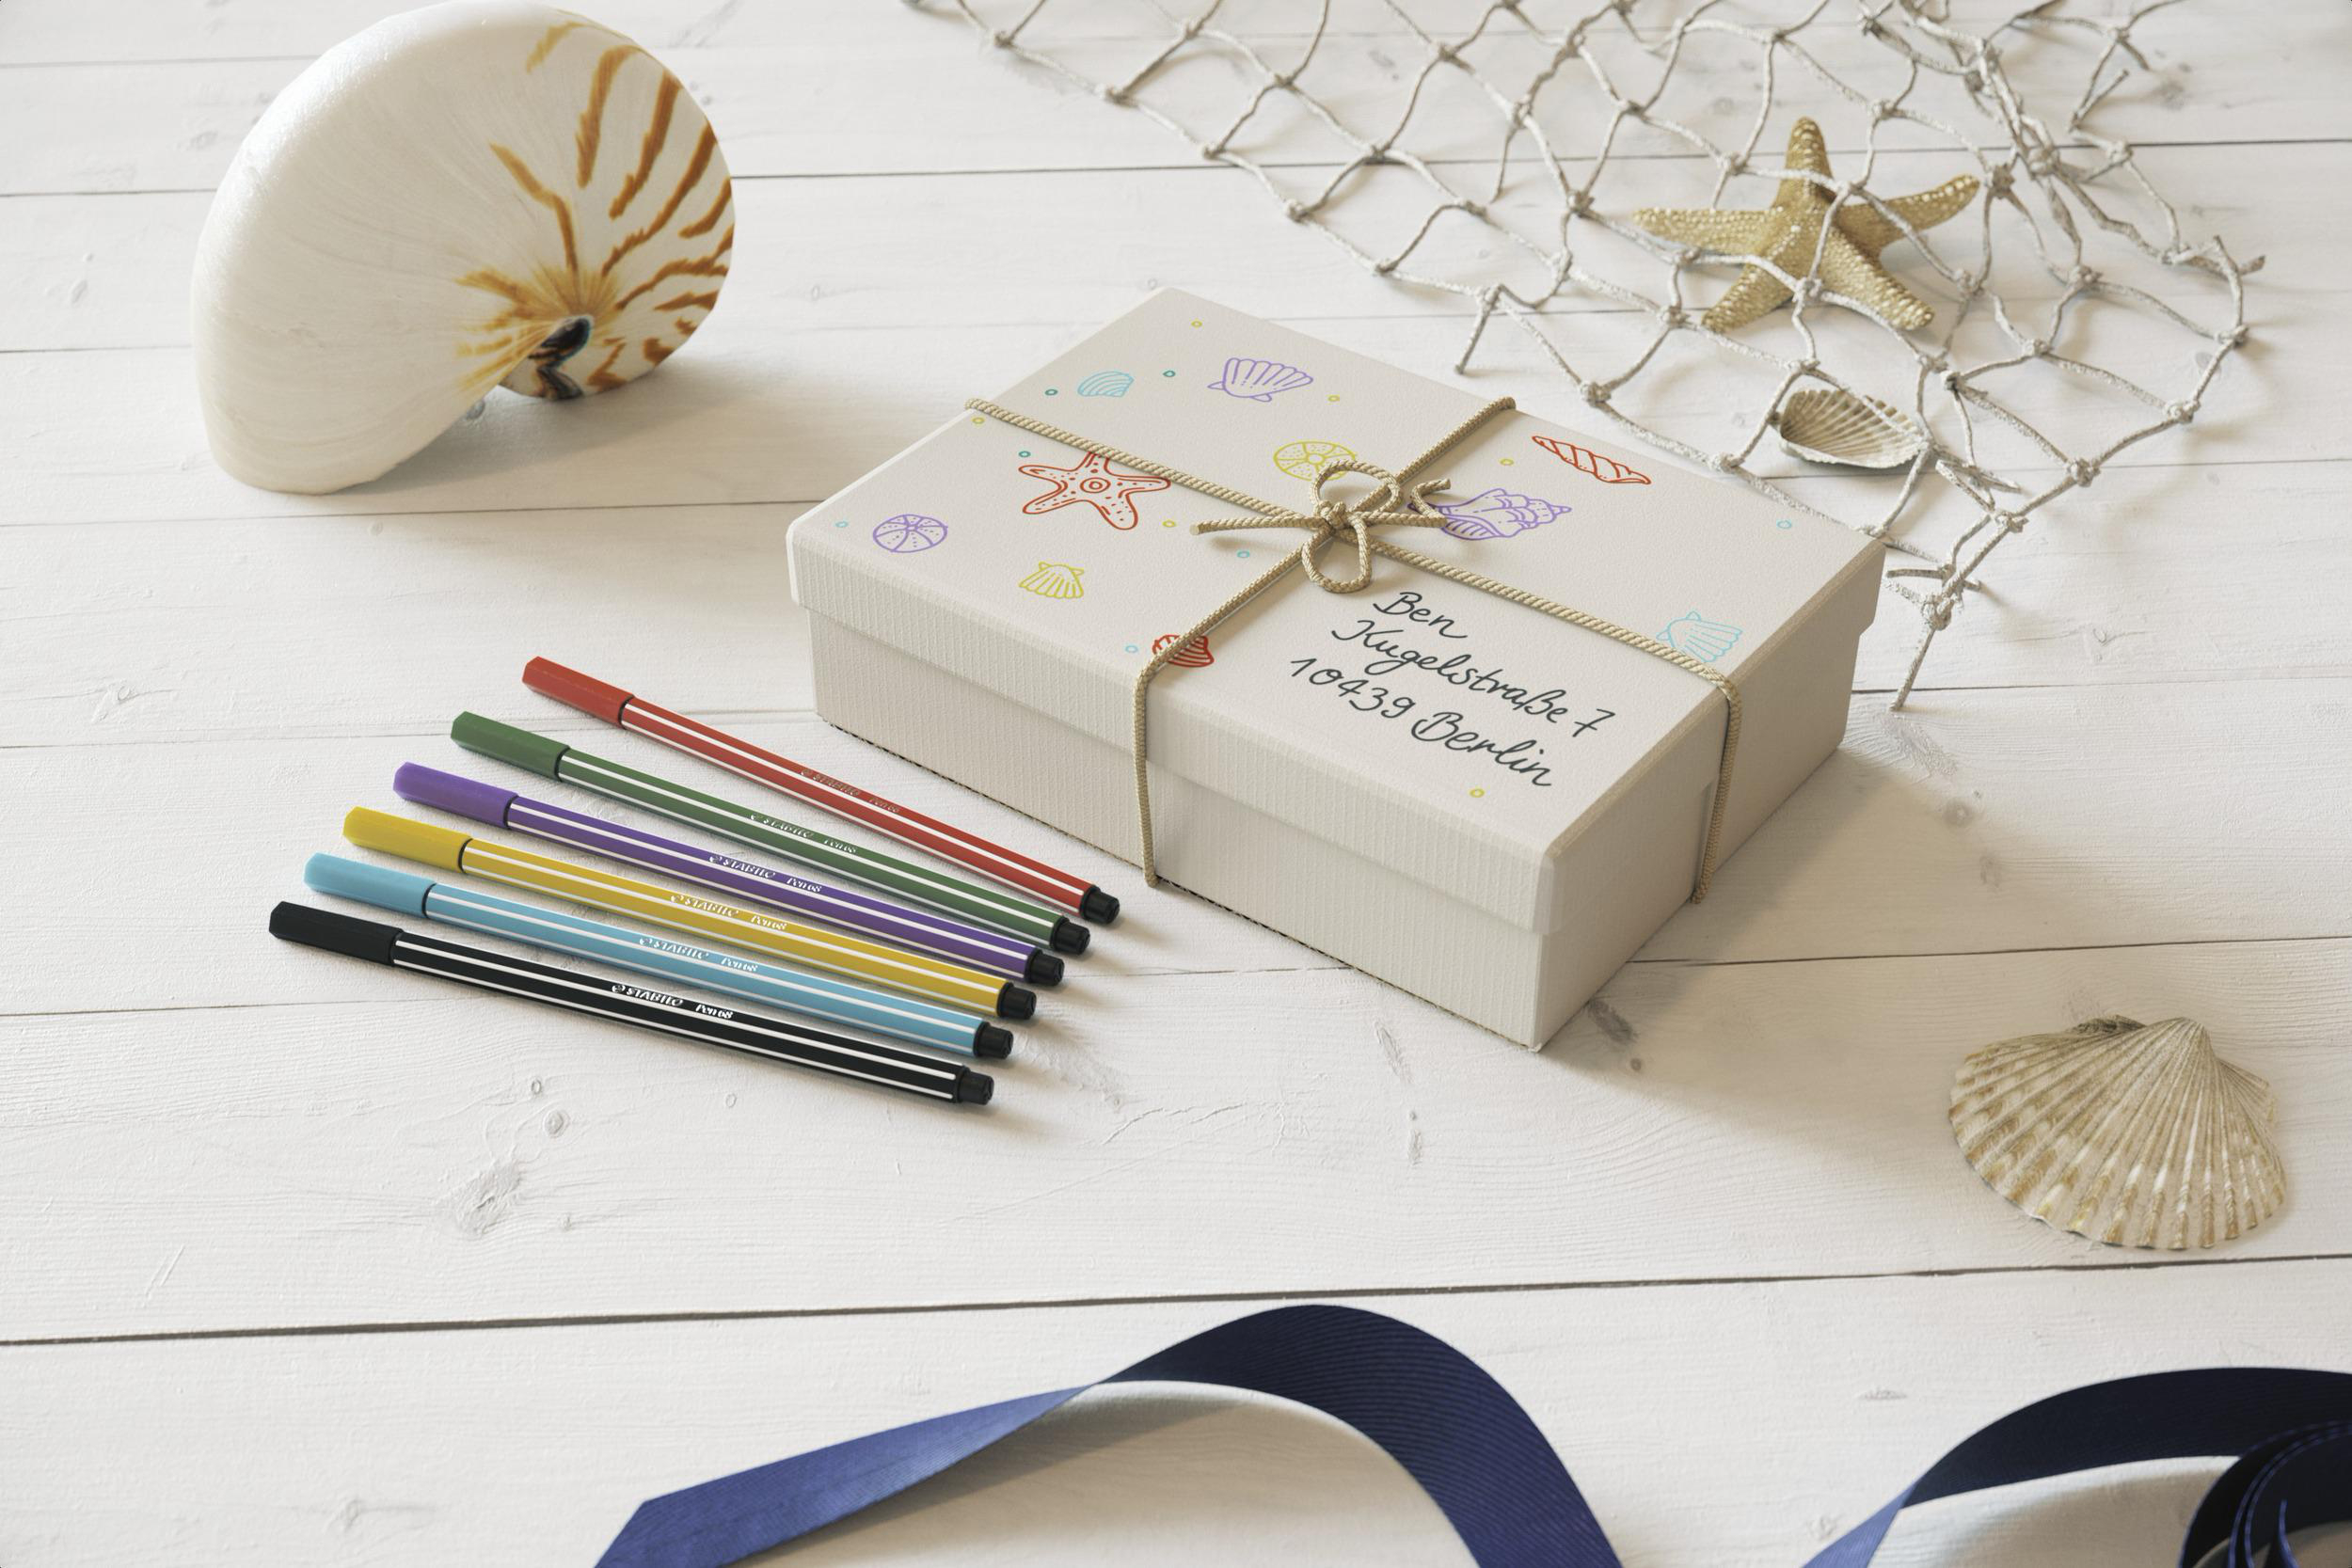 8 verschiedene Premium Pack Filzstift, 8er Pastellfarben Pen 68, STABILO